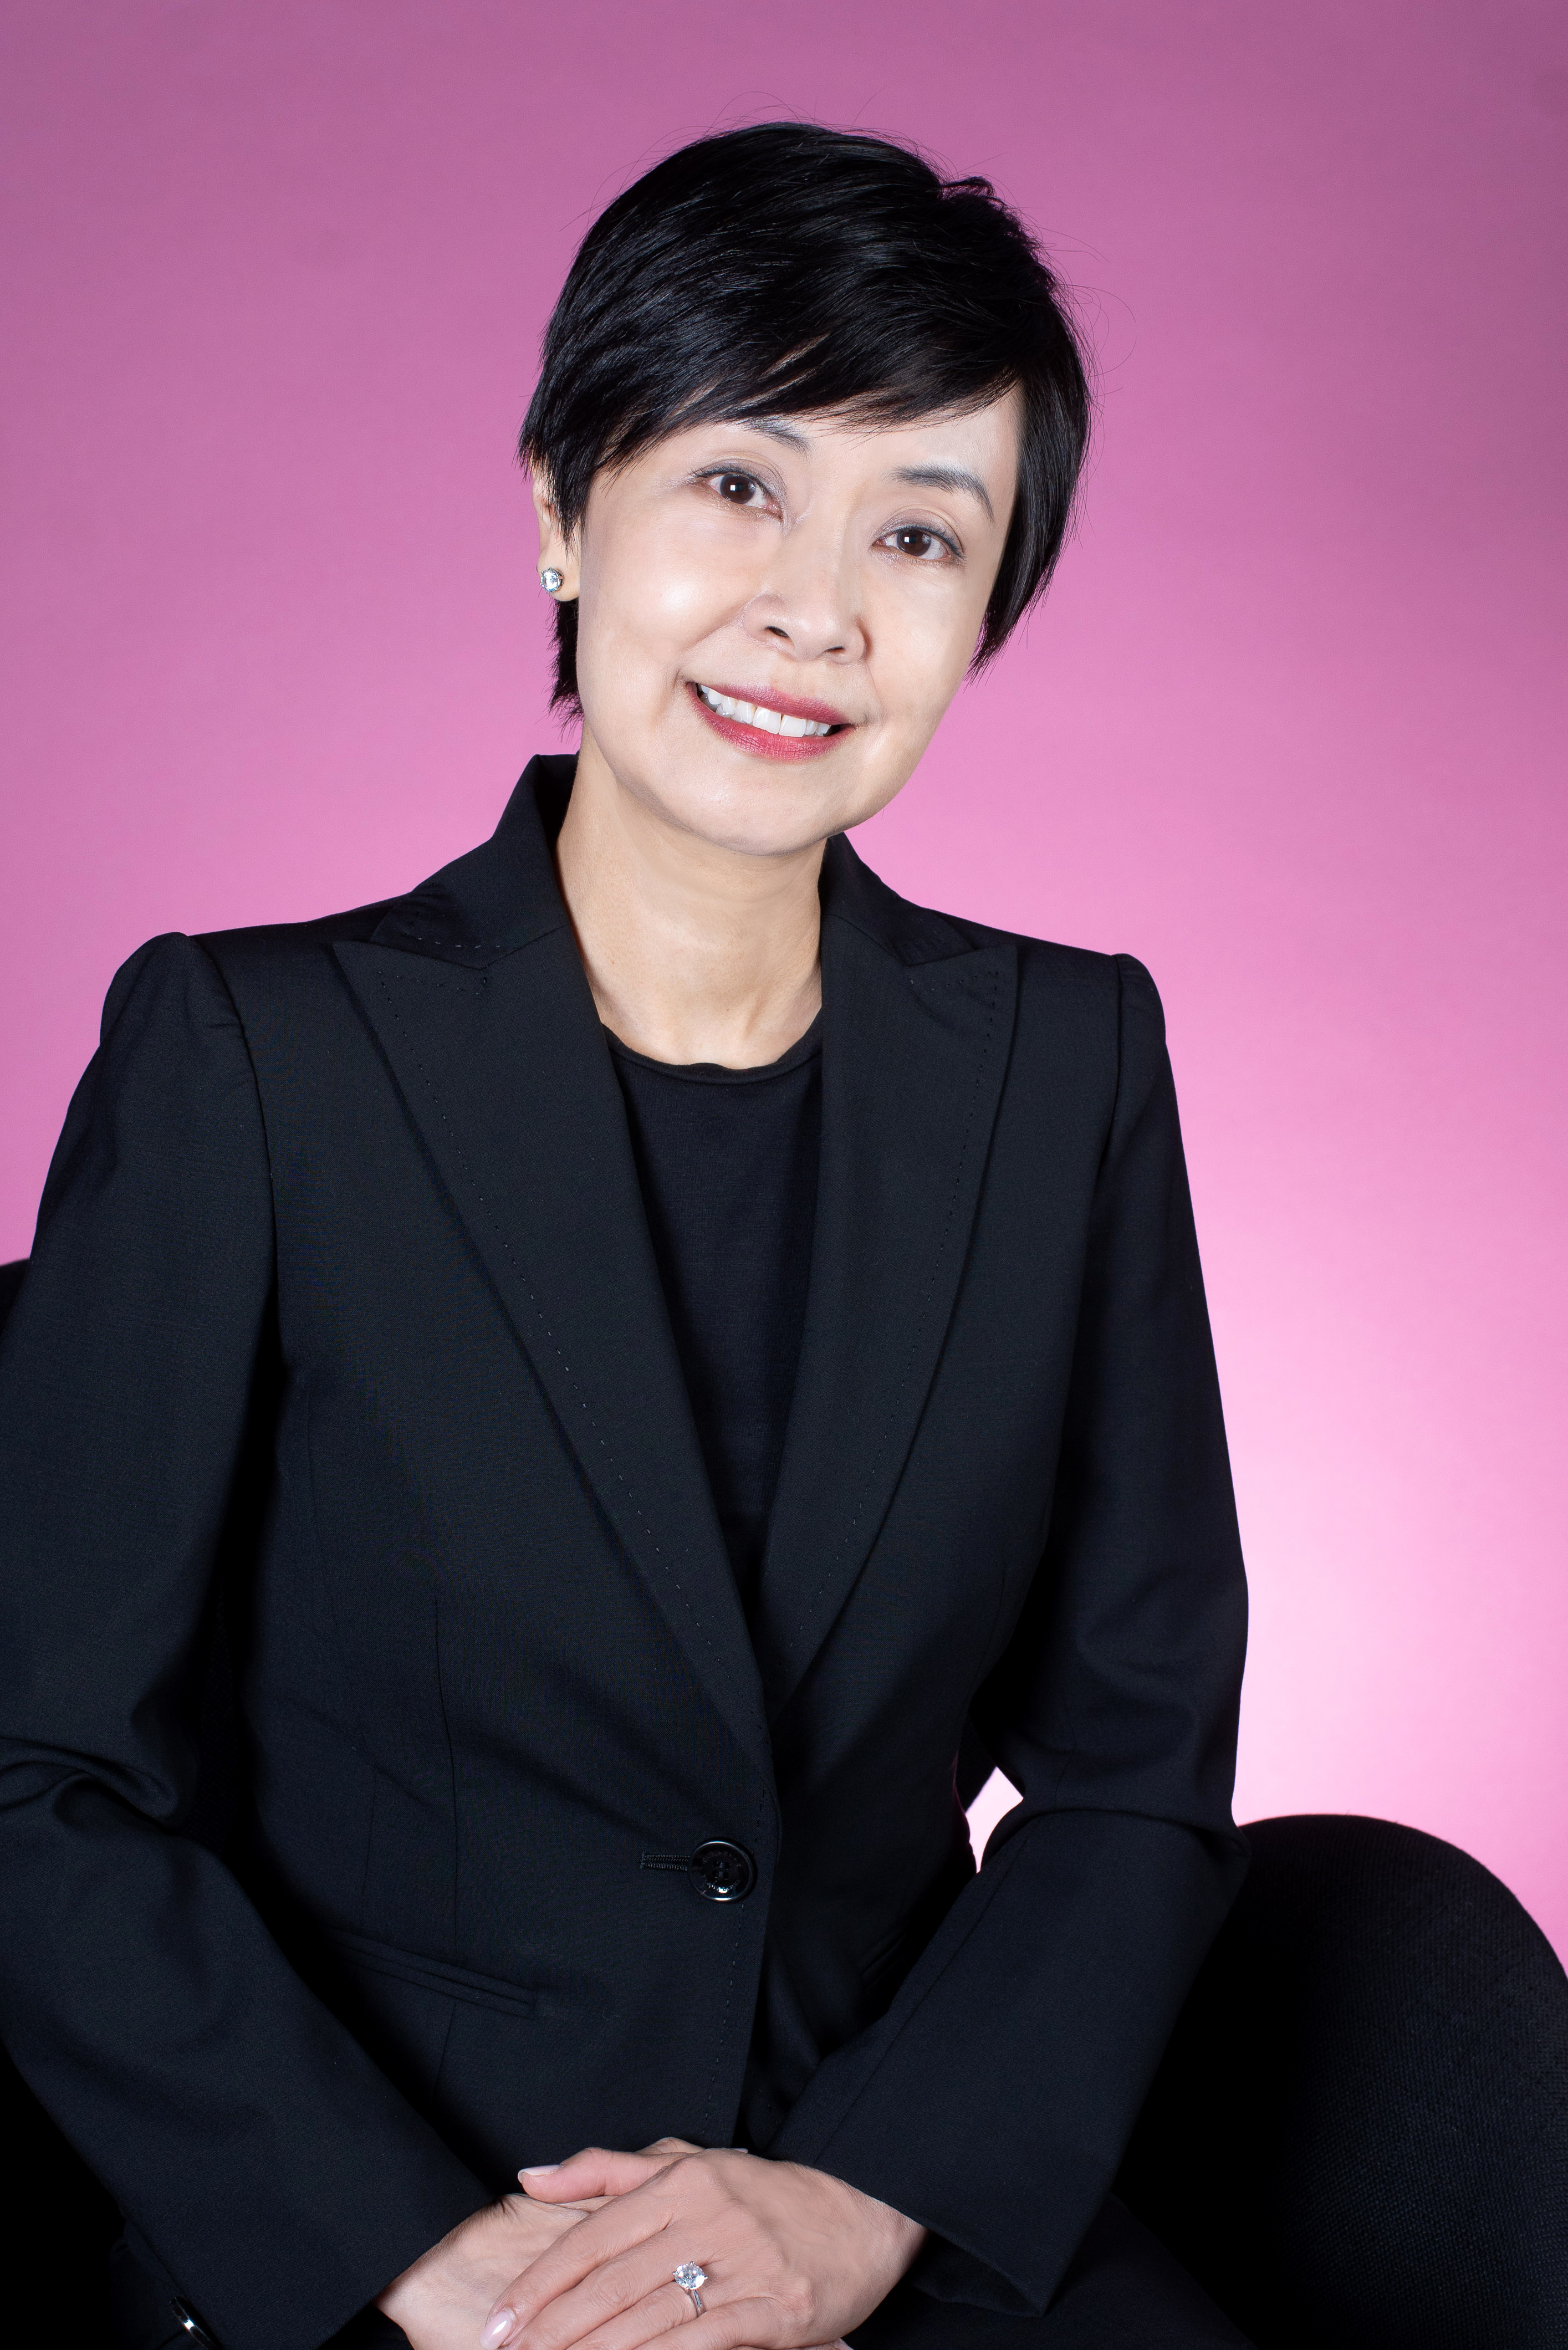 Diana Cesar, Executive Director and Chief Executive